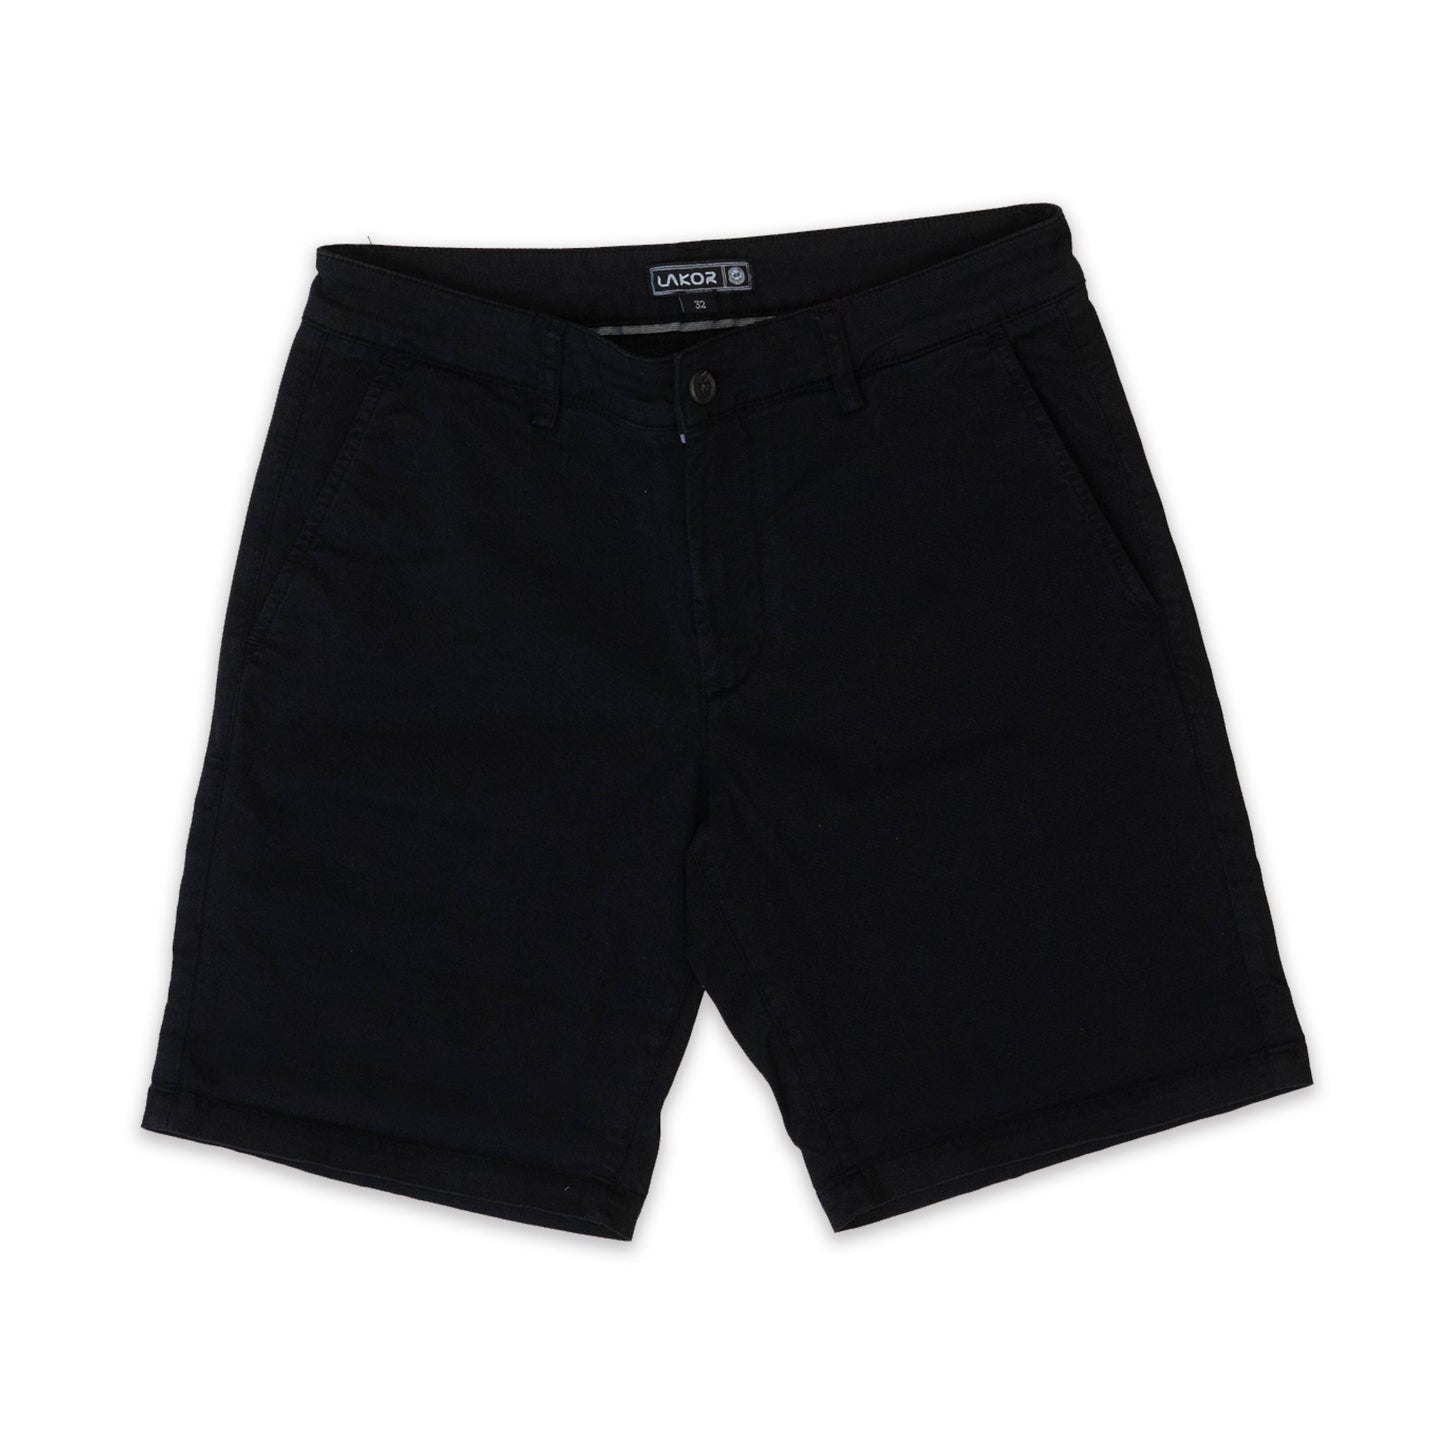 Lakor - Chino-shorts (sort)